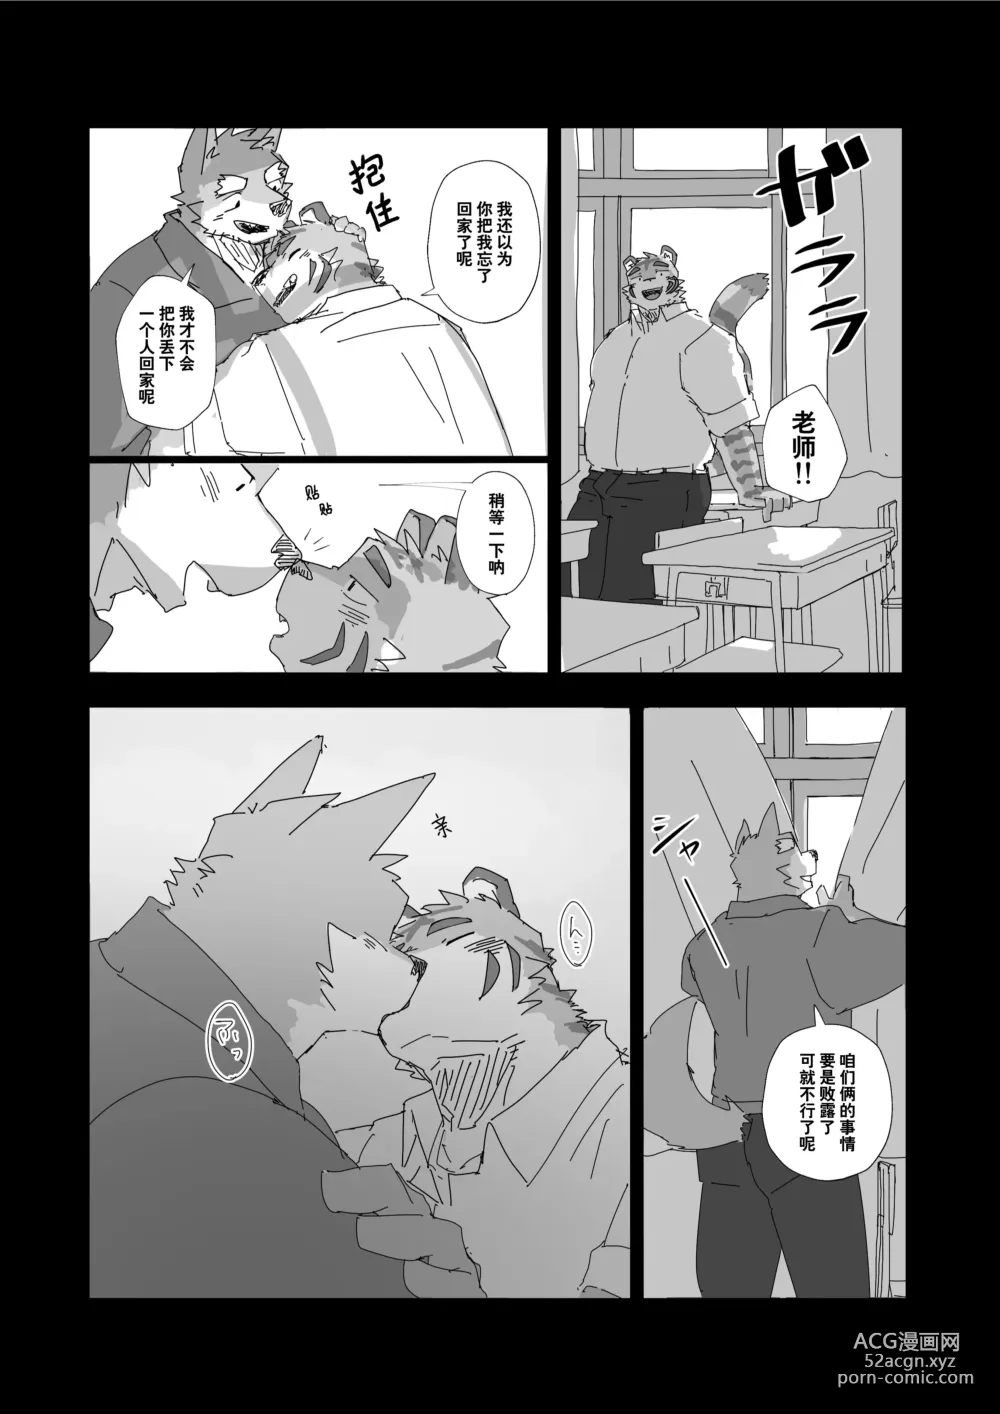 Page 16 of manga 放学后的游戏+后续